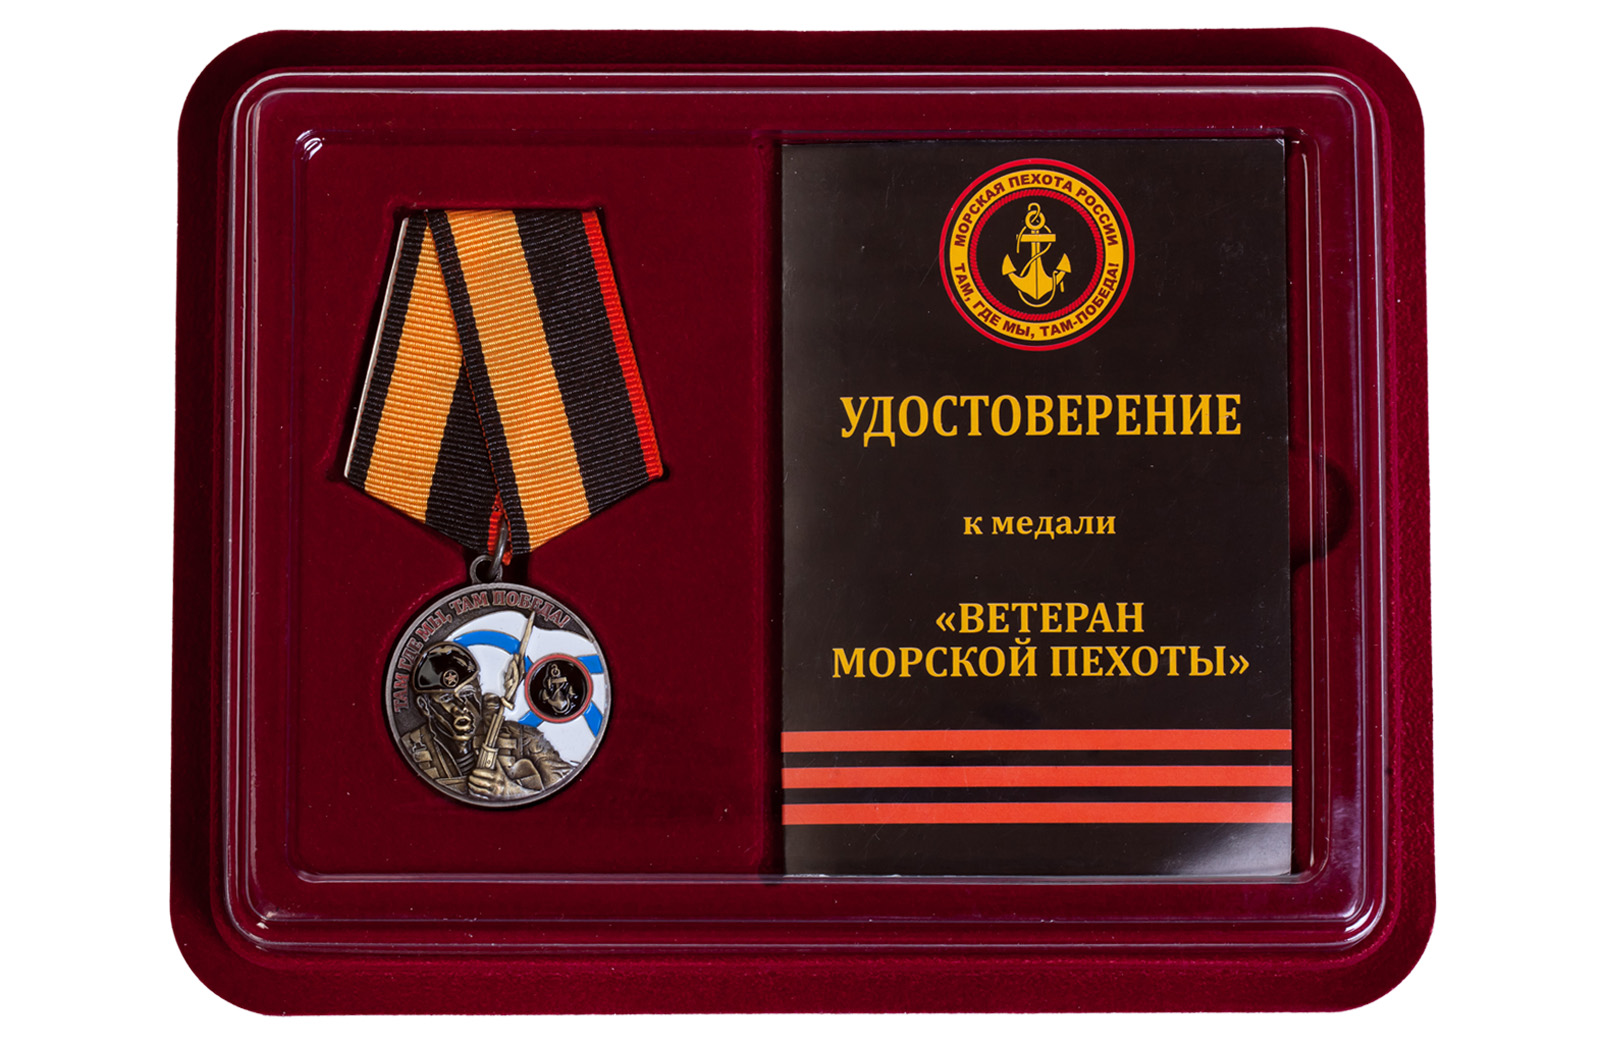 Купить медаль Ветерану Морской пехоты оптом или в розницу